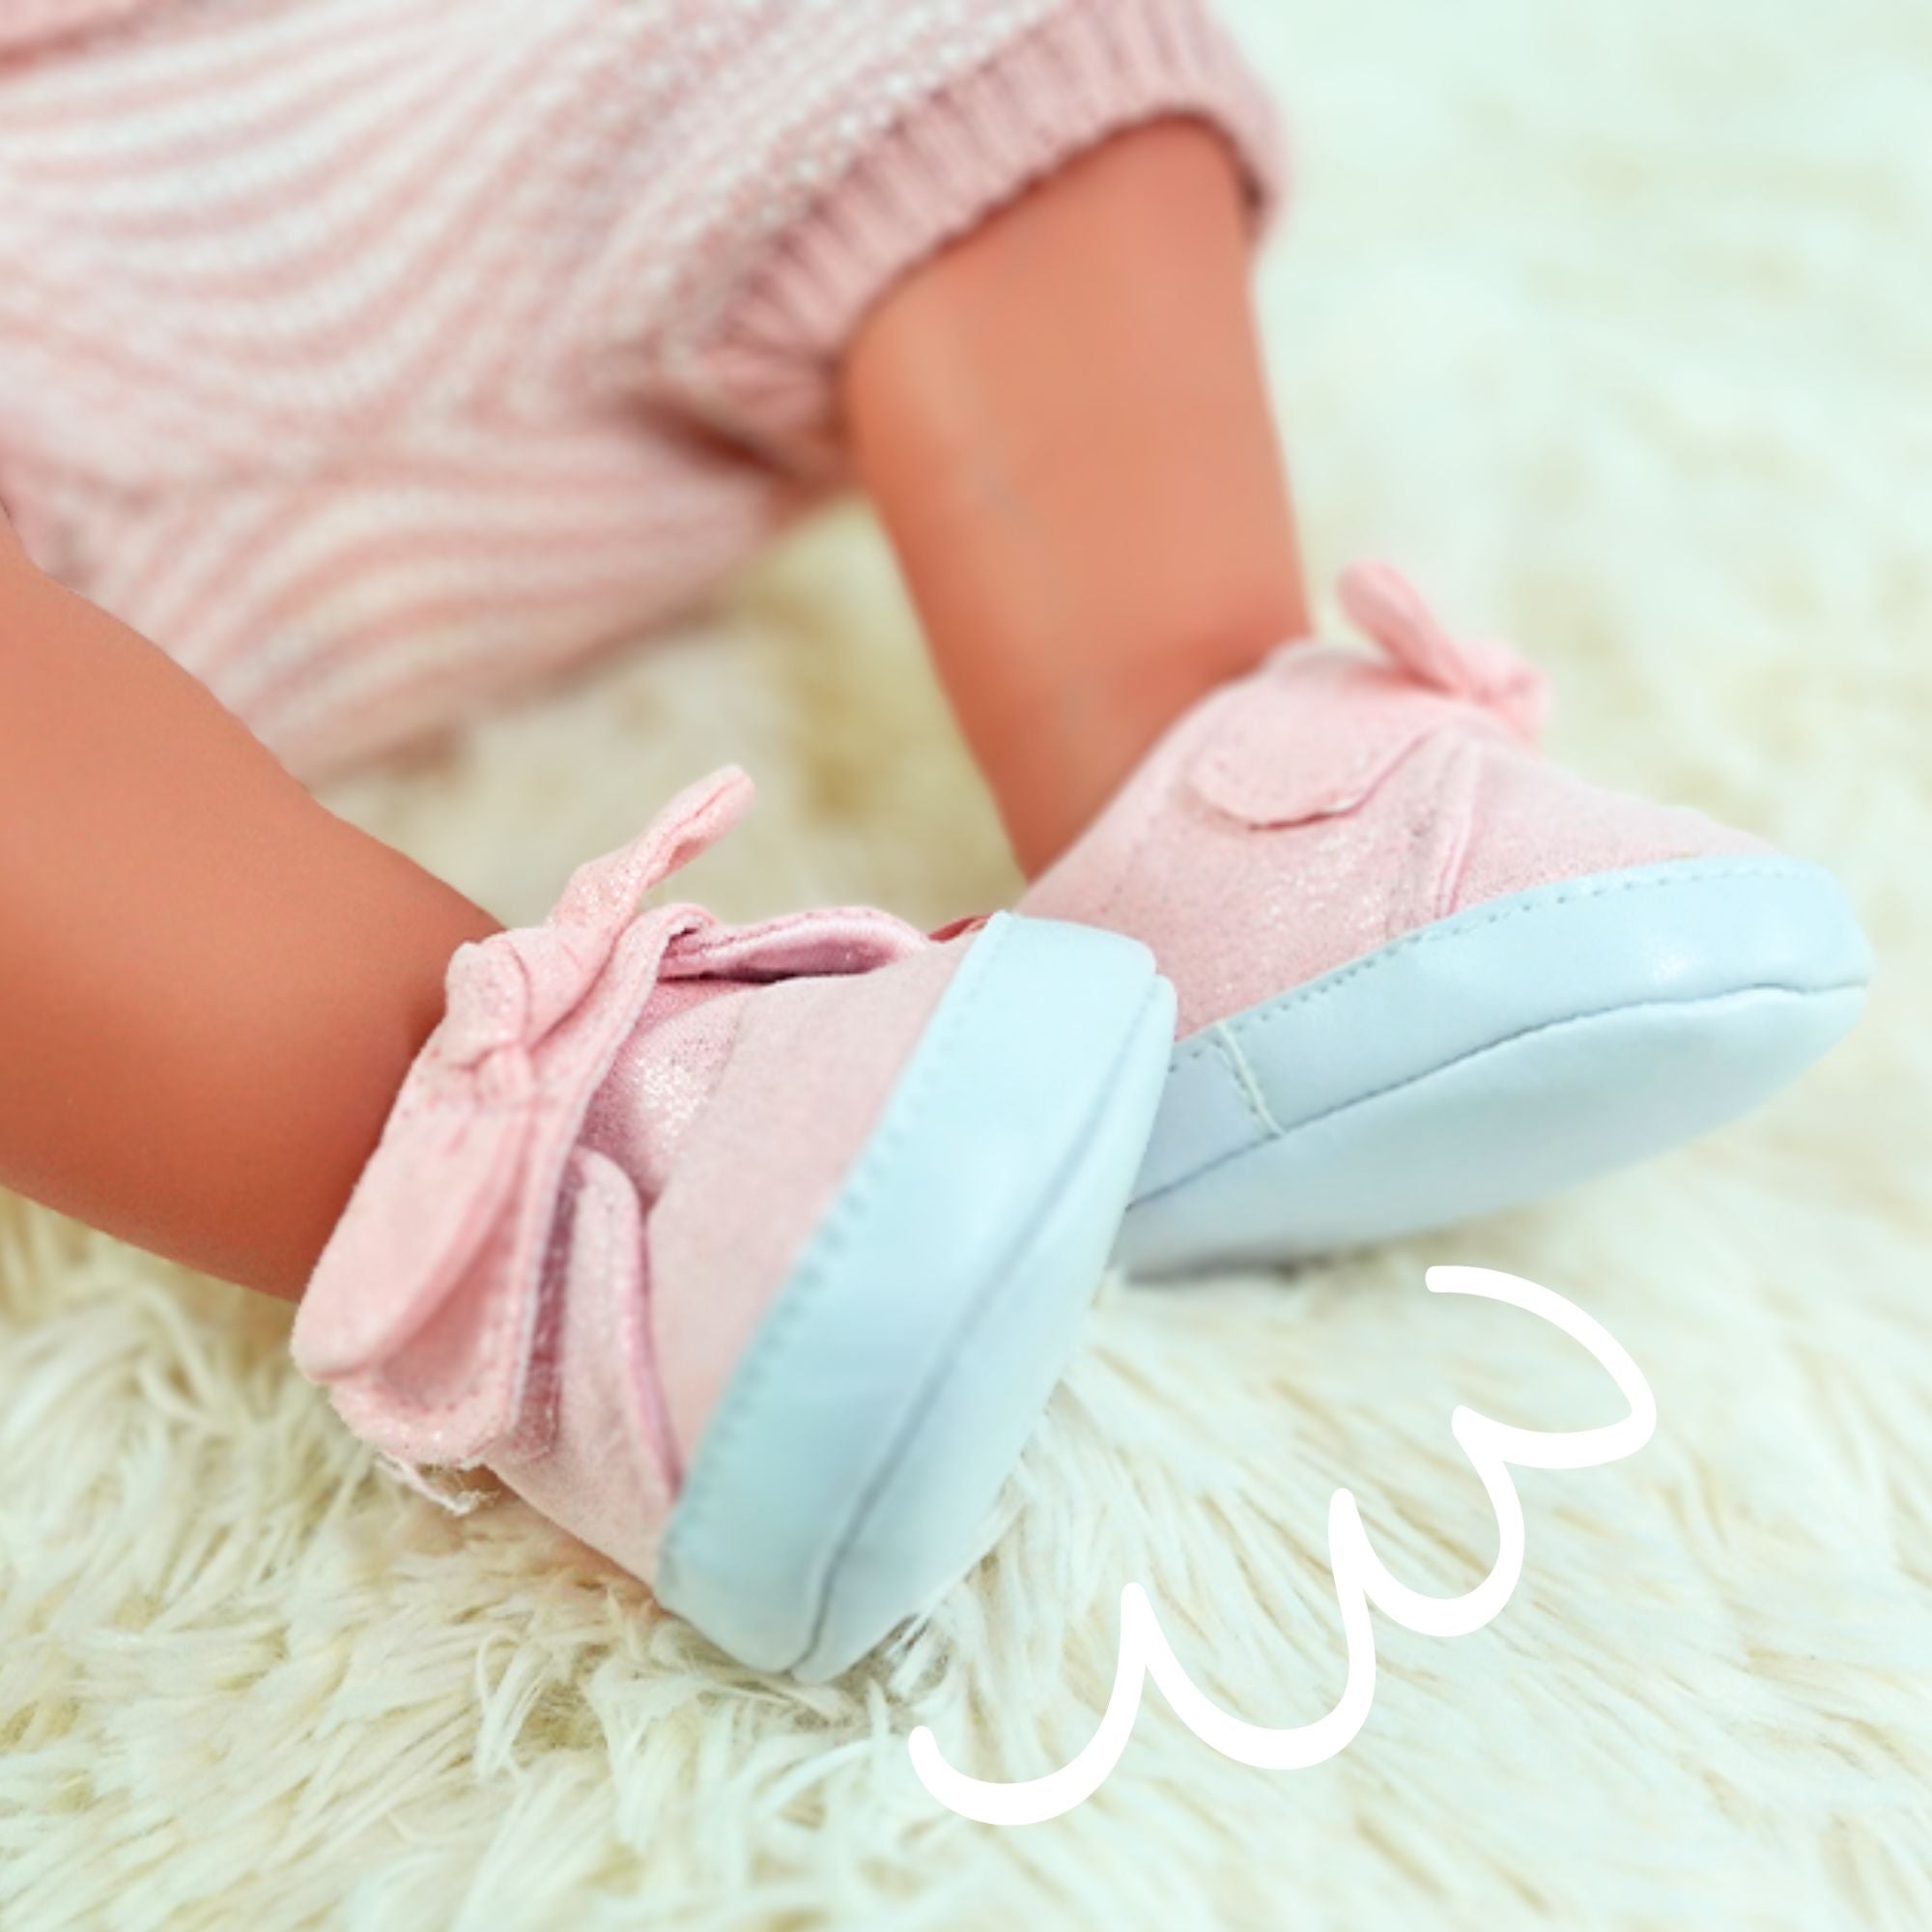 Surtido zapatos bebé Reborn